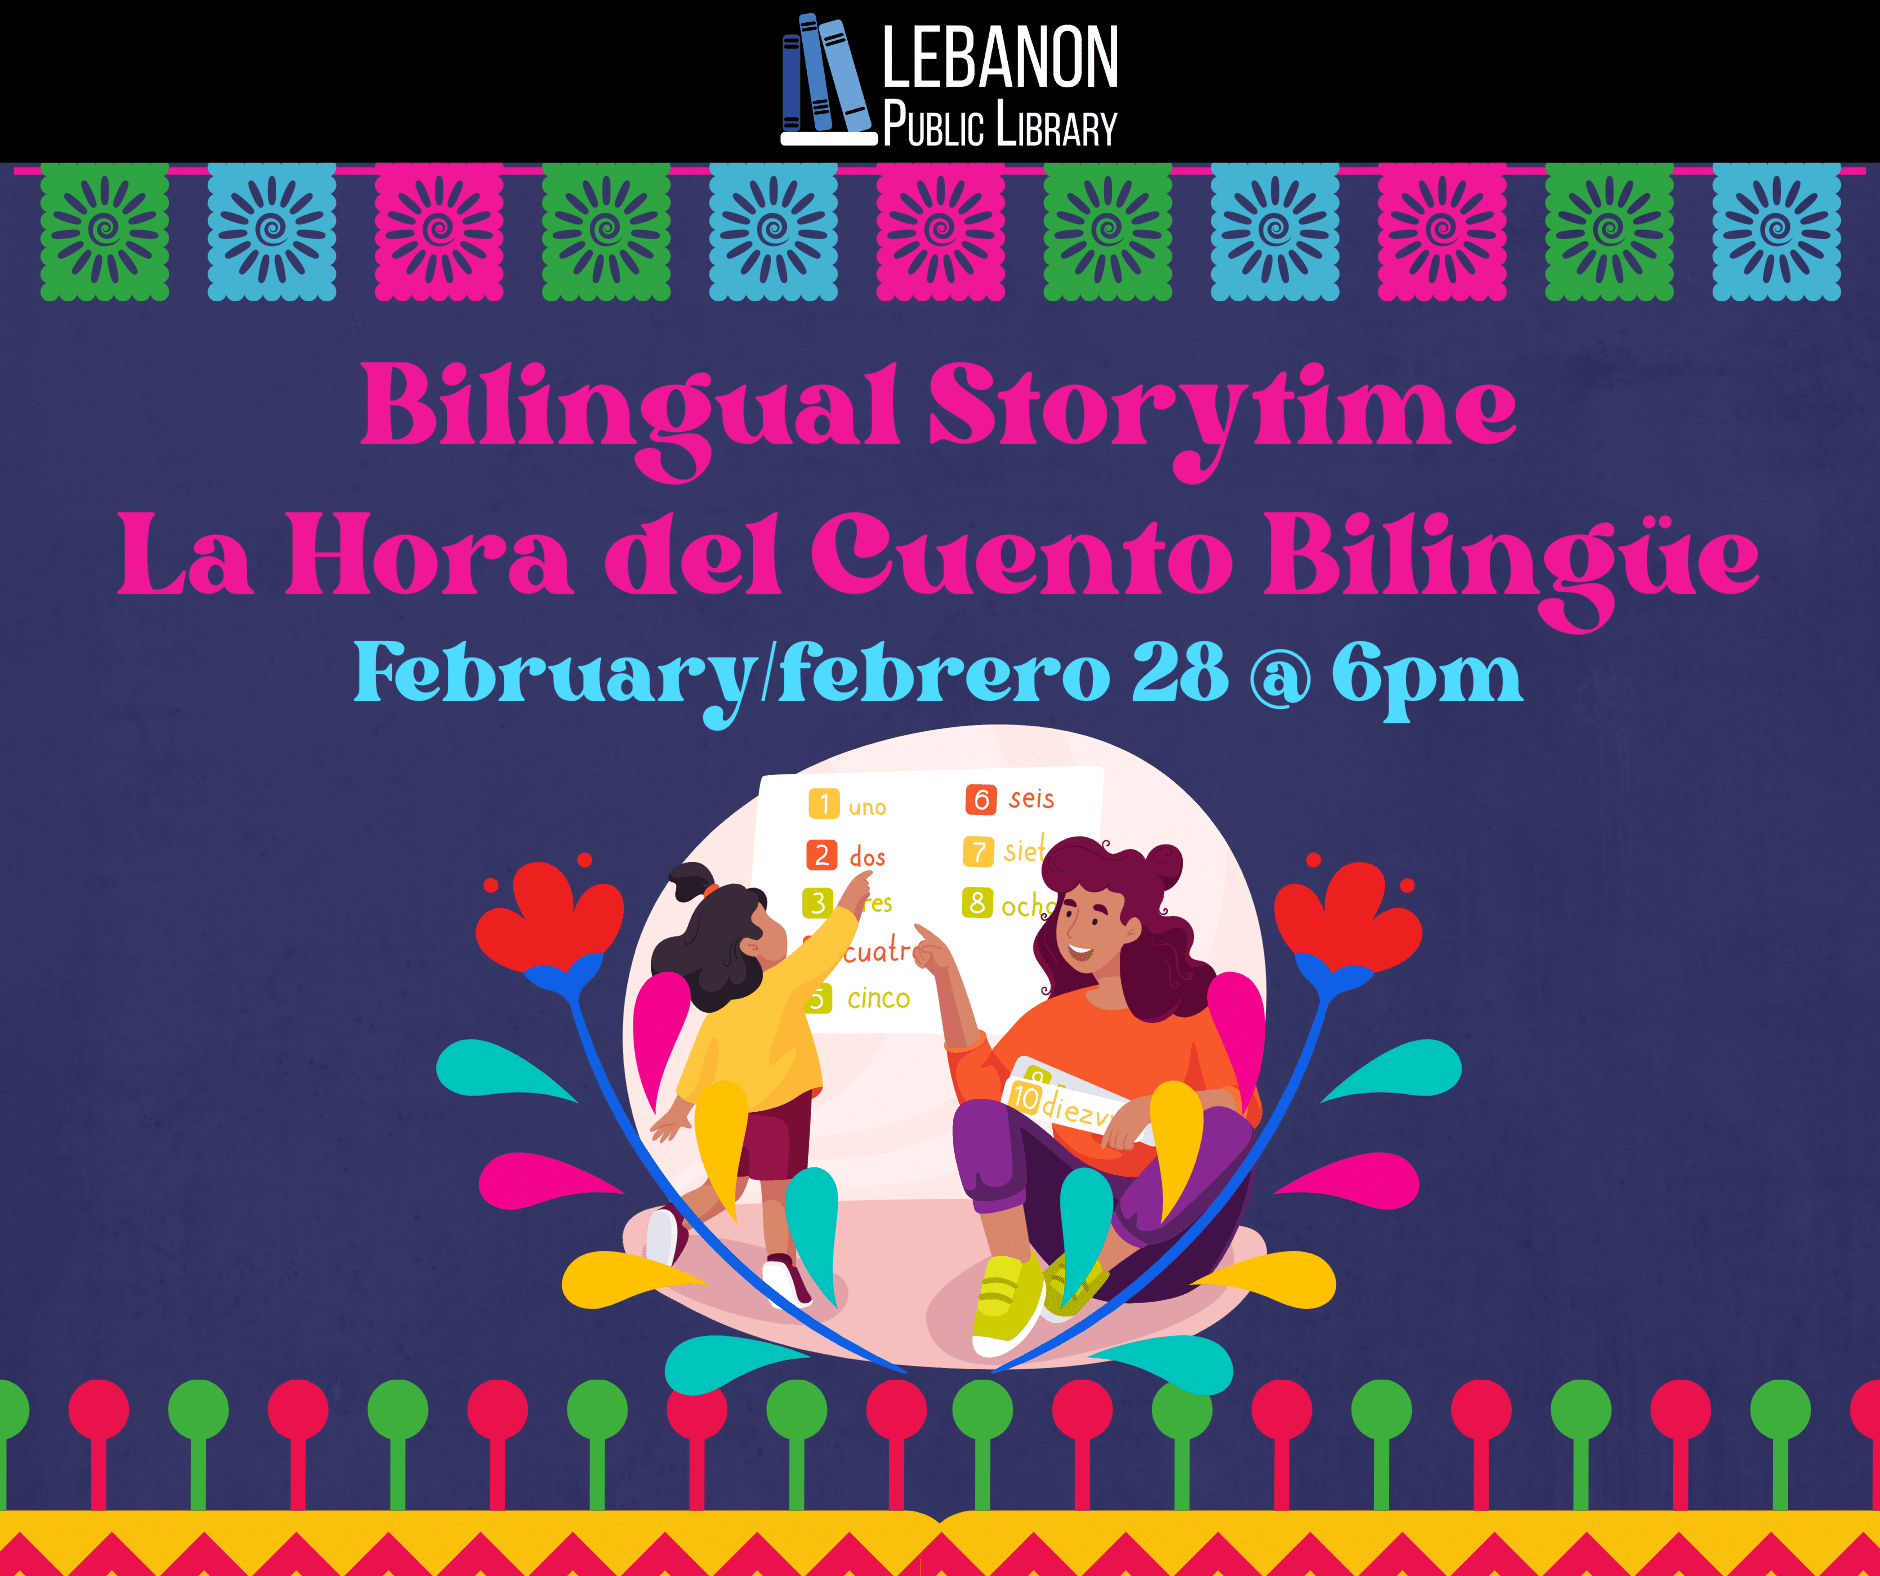 Bilingual Storytime, La Hora del Cuento Bilingüe, February/febrero 28th at 6 p.m.